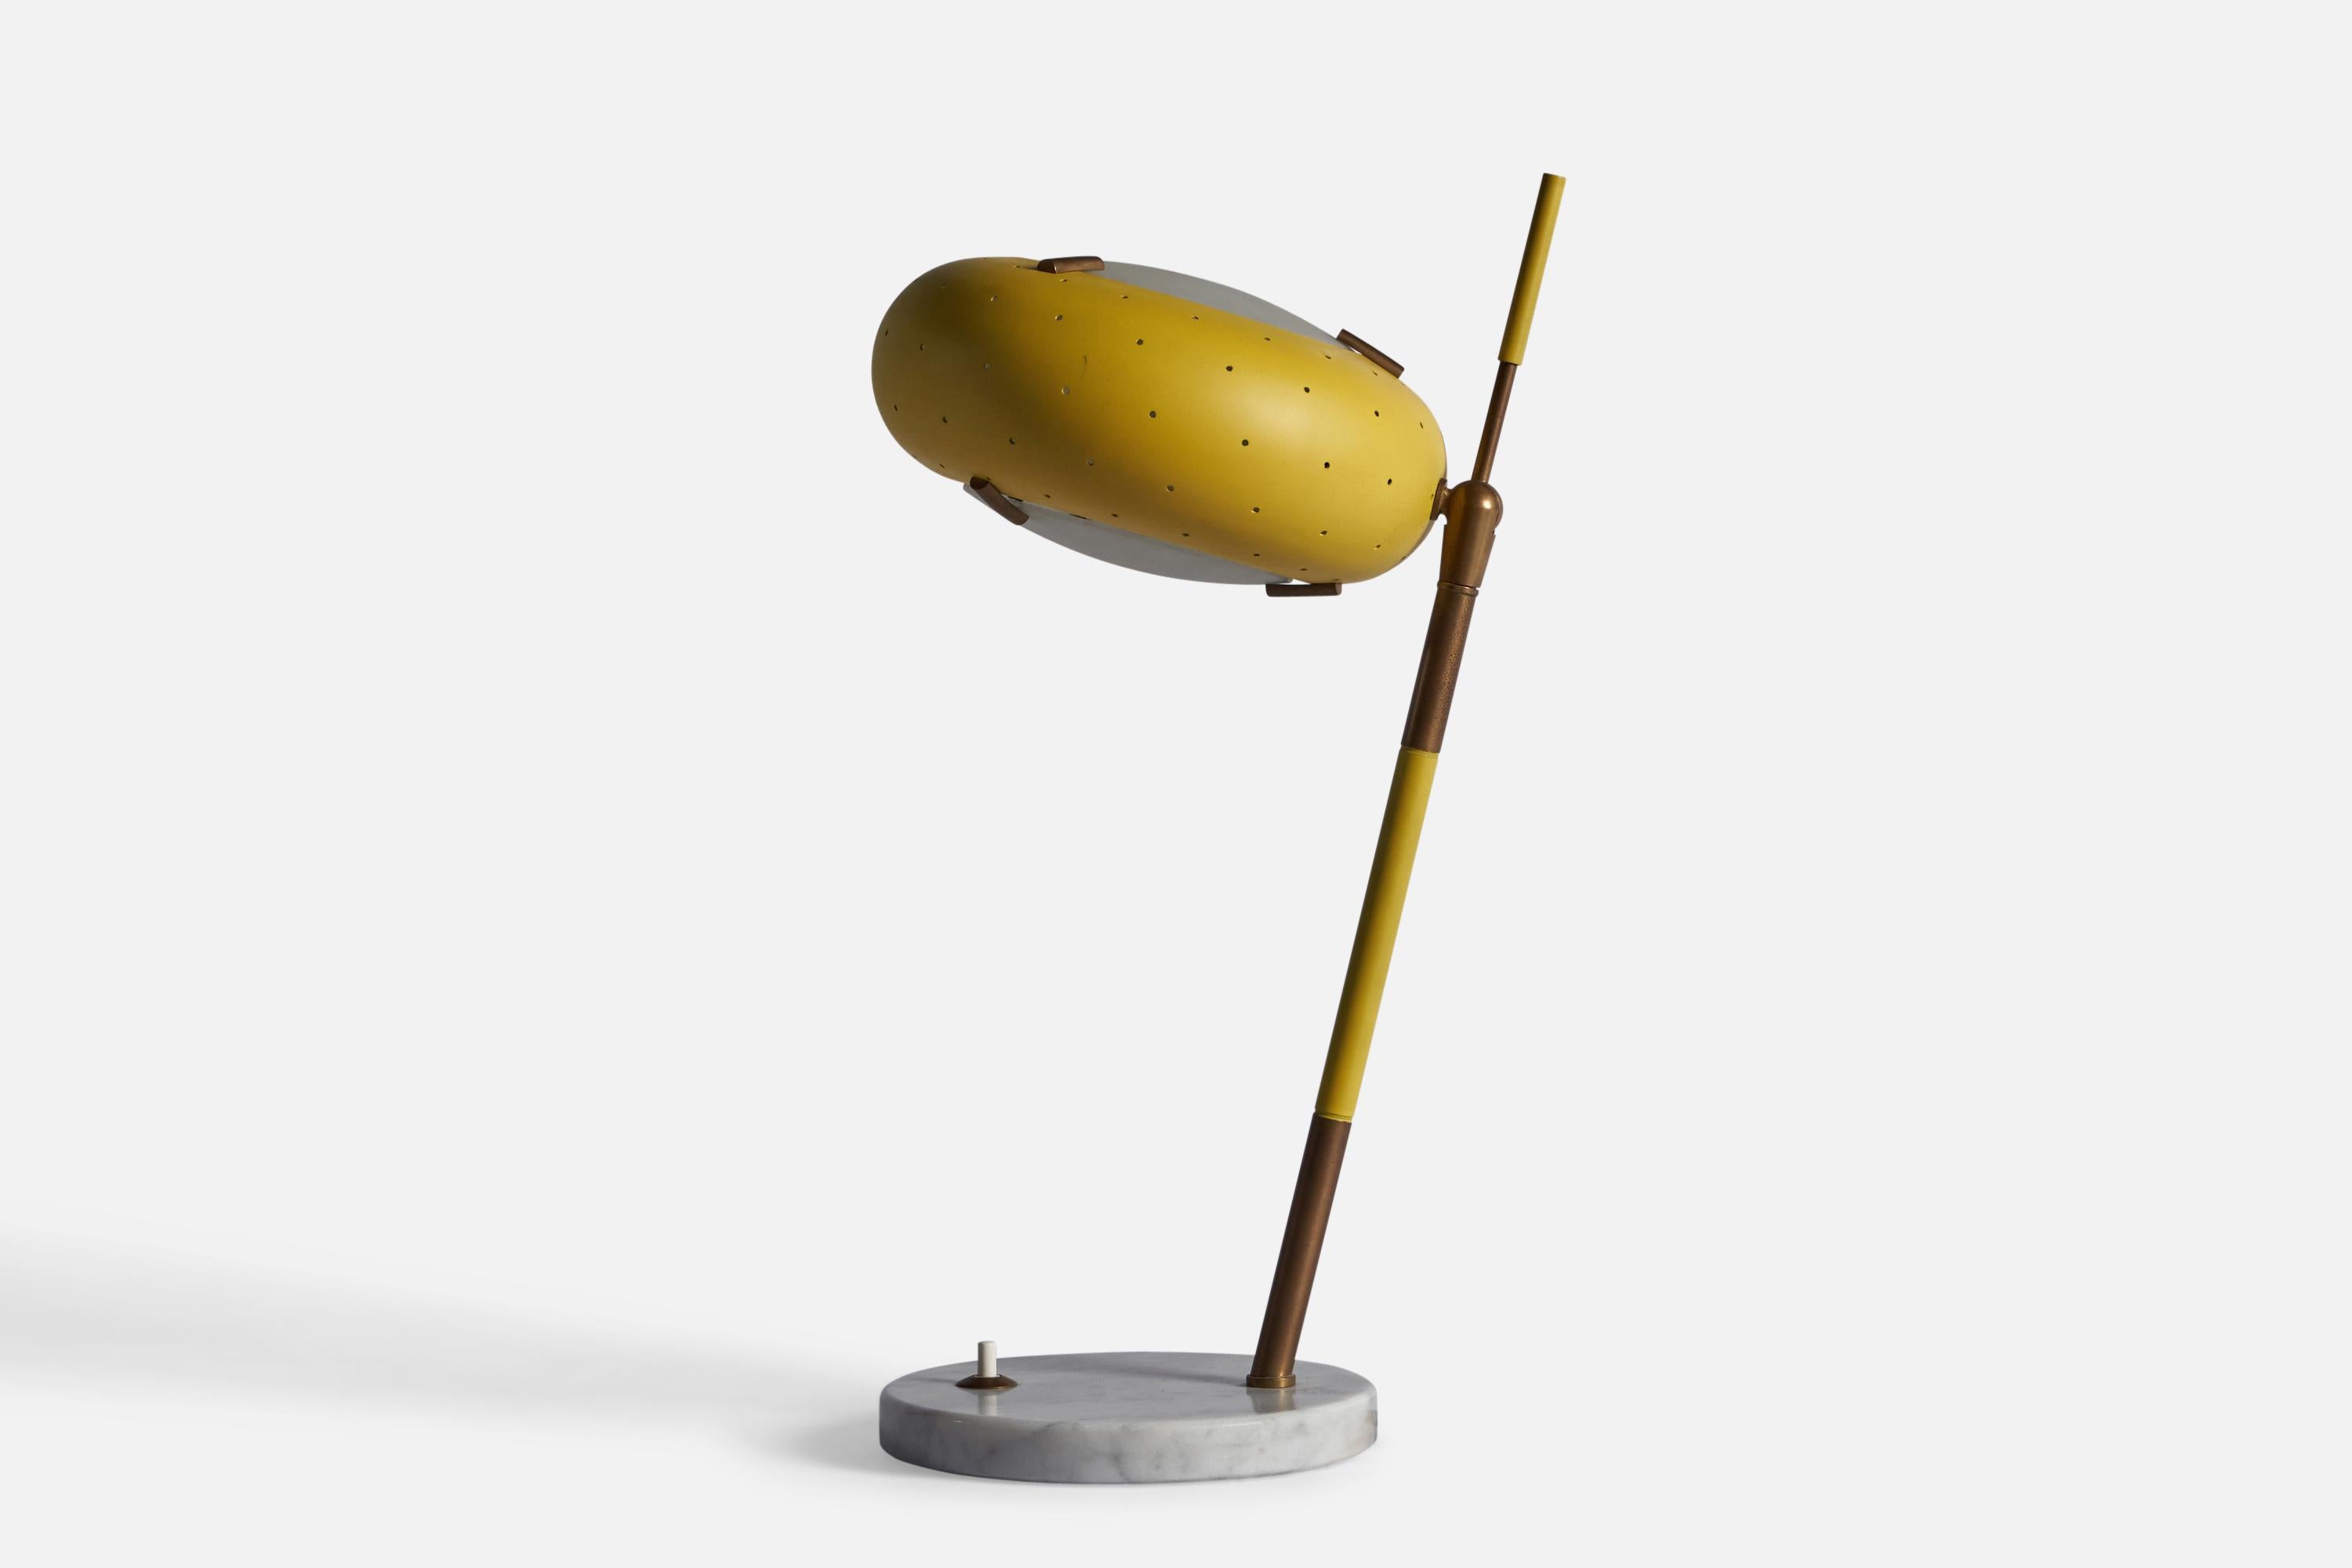 Lampe de table réglable en laiton, marbre de Carrare, verre et métal laqué jaune, conçue et produite par Stilux Milano, c.C. années 1950

Dimensions totales : 16